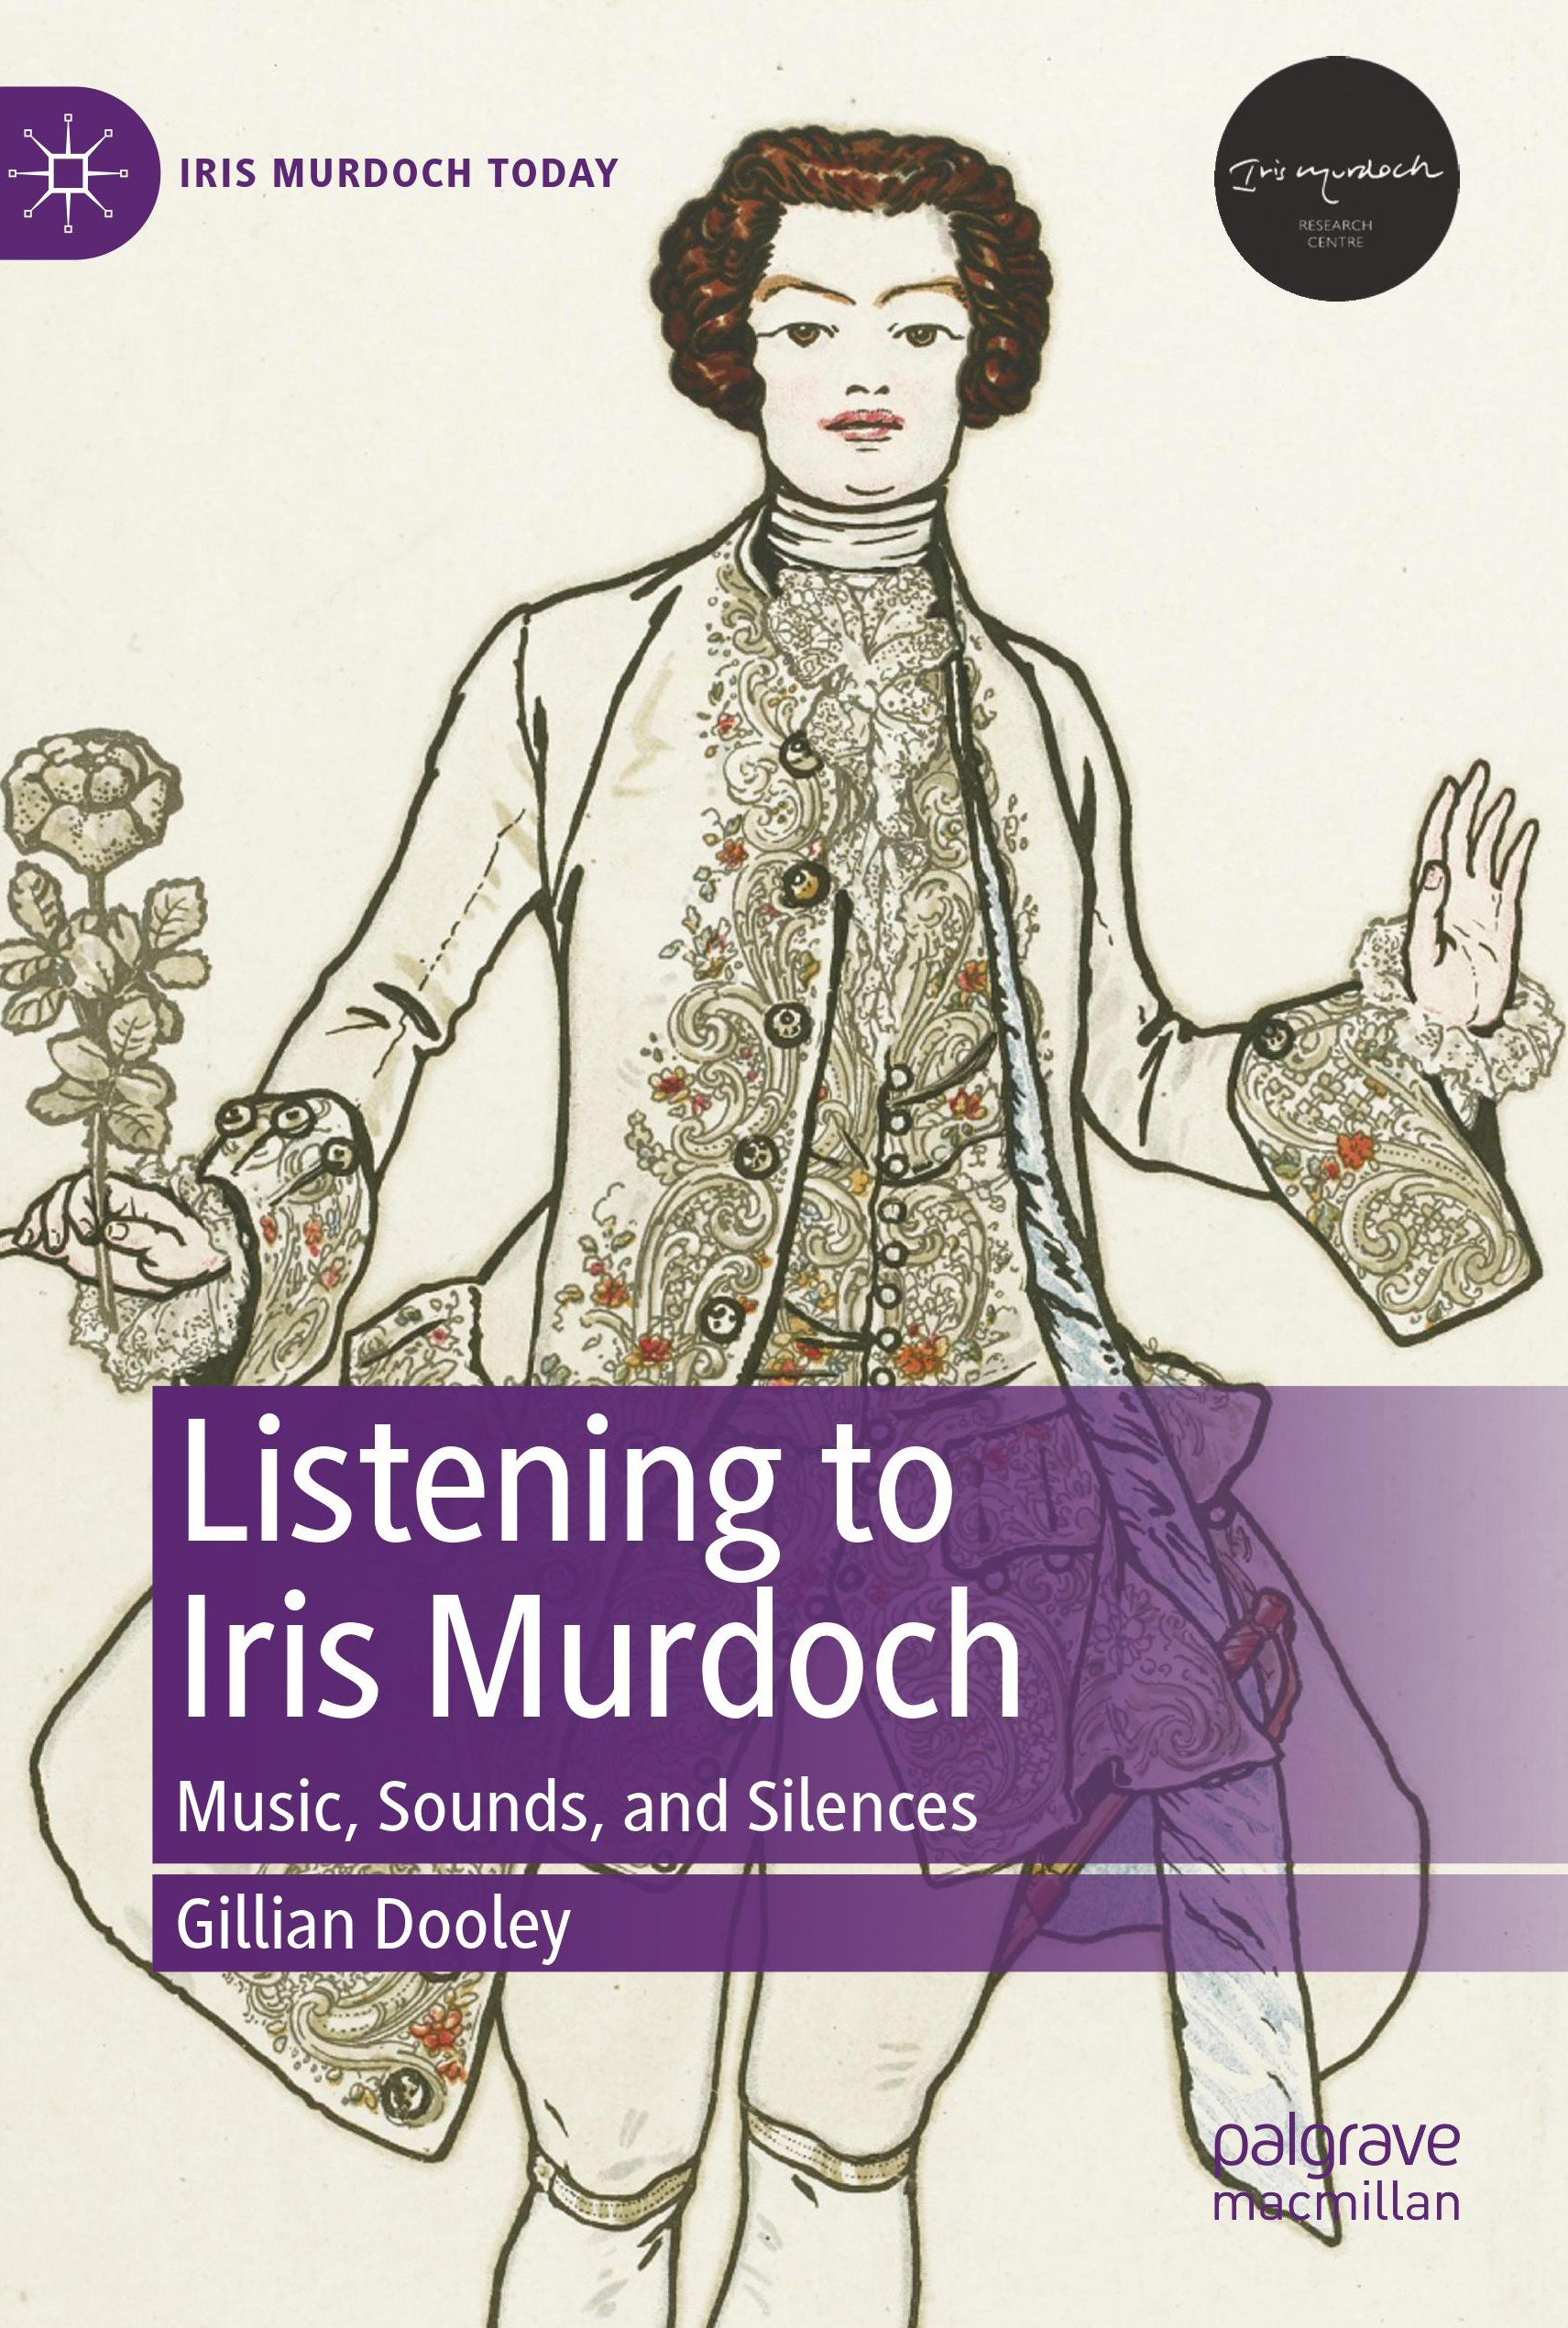 Iris Murdoch: Music, Sounds and Silences